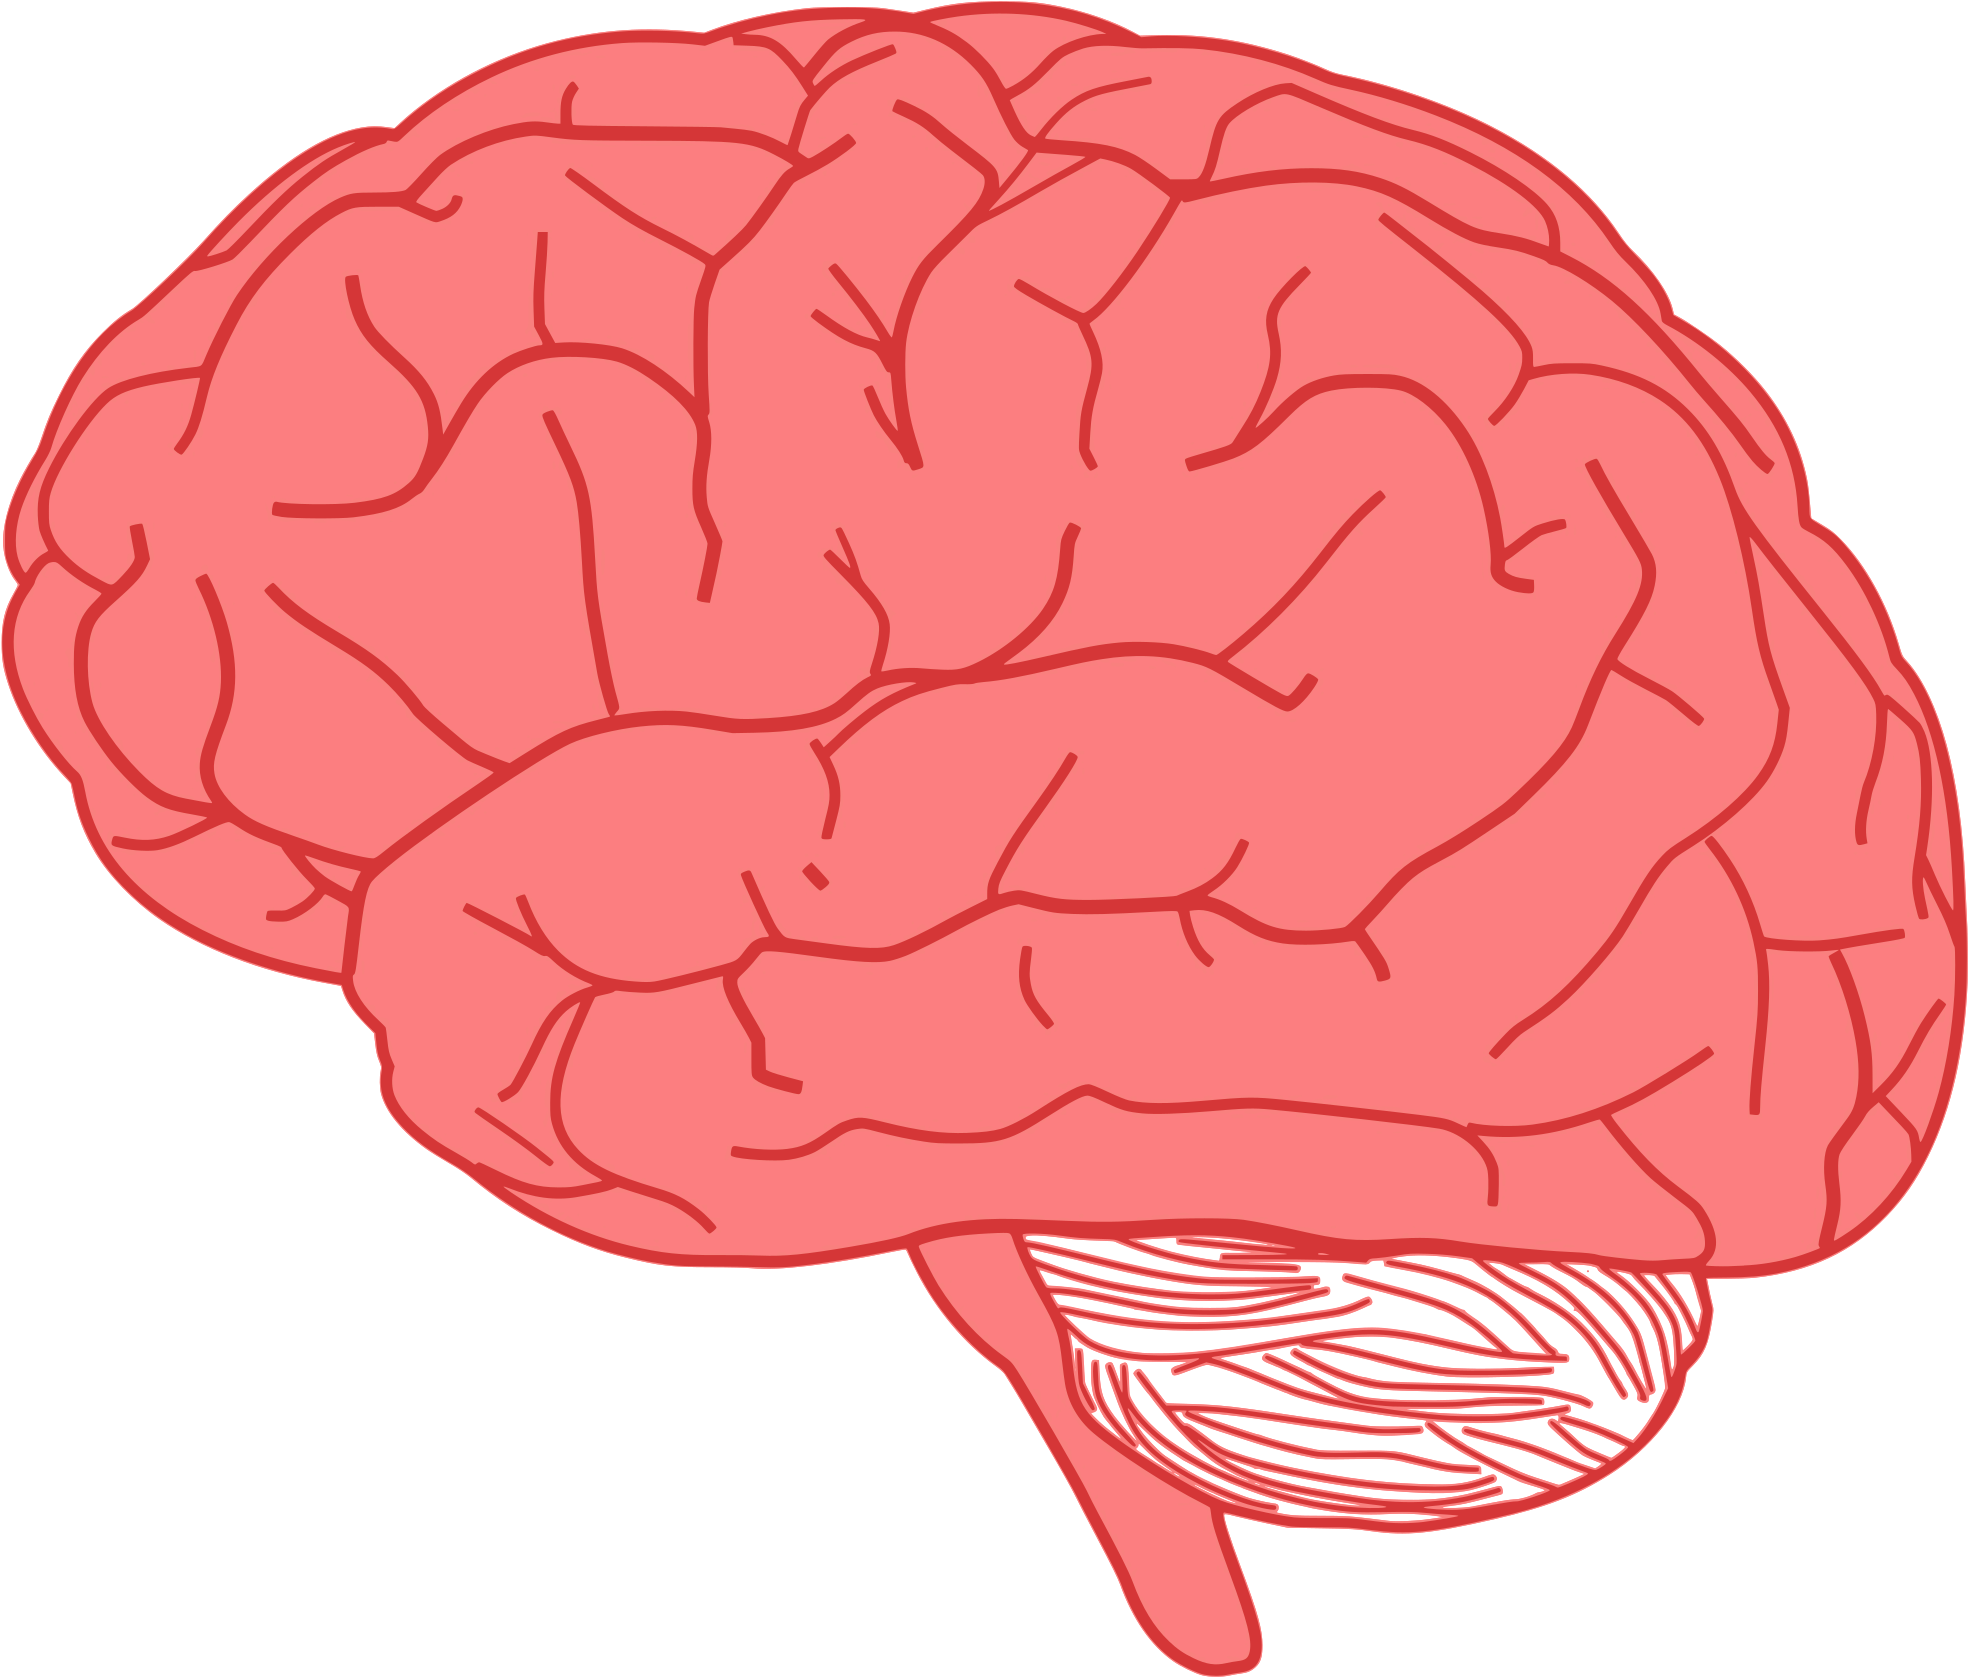 Brain tasks. Изображение мозга человека. Векторный мозг.